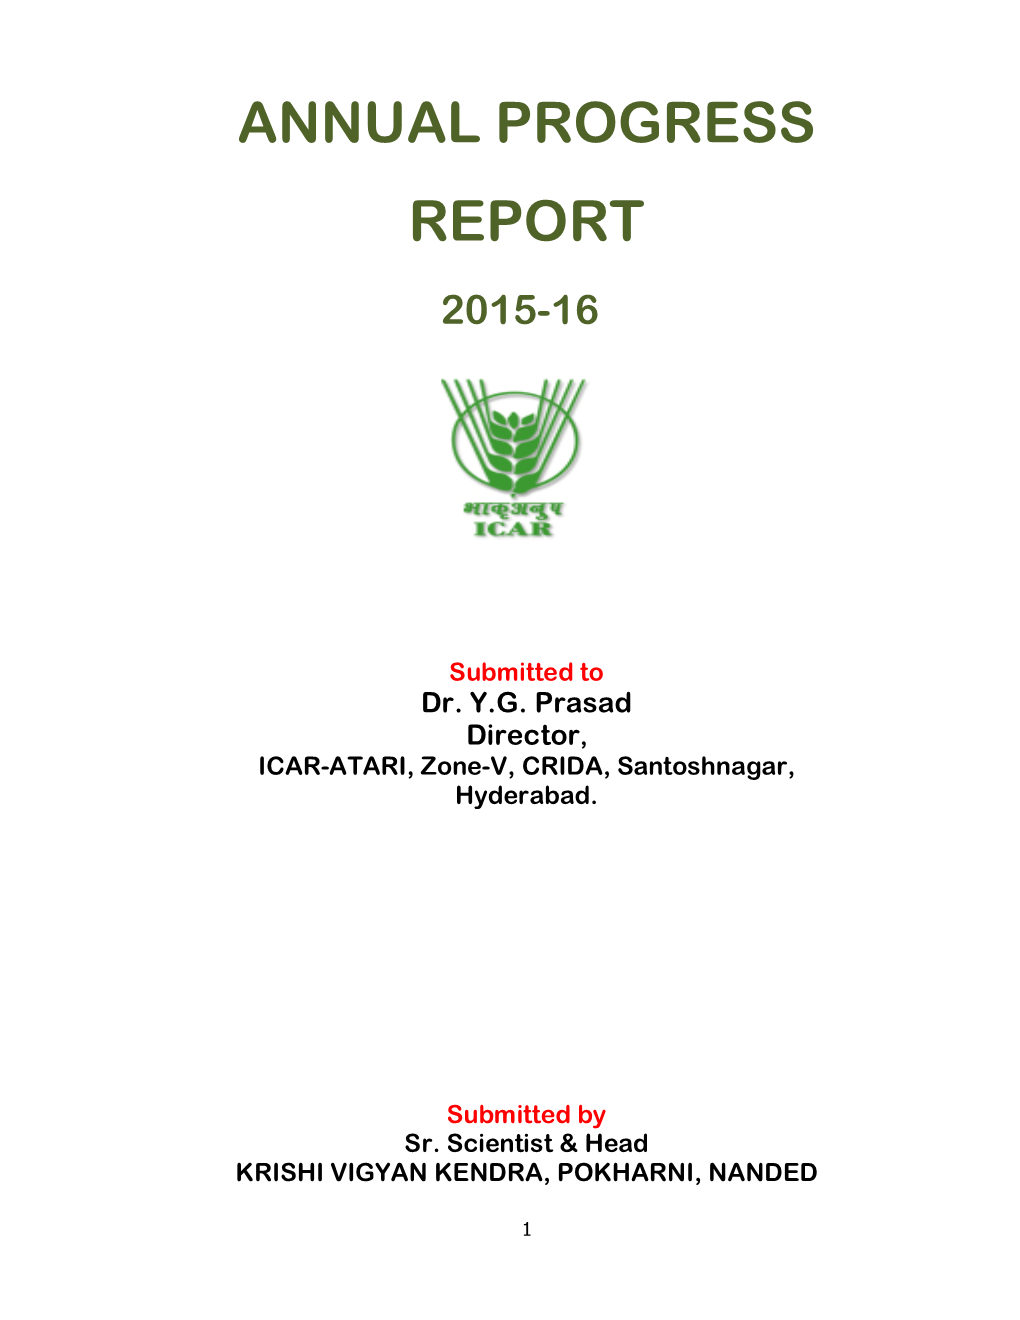 Annual Progress Report 2015-16